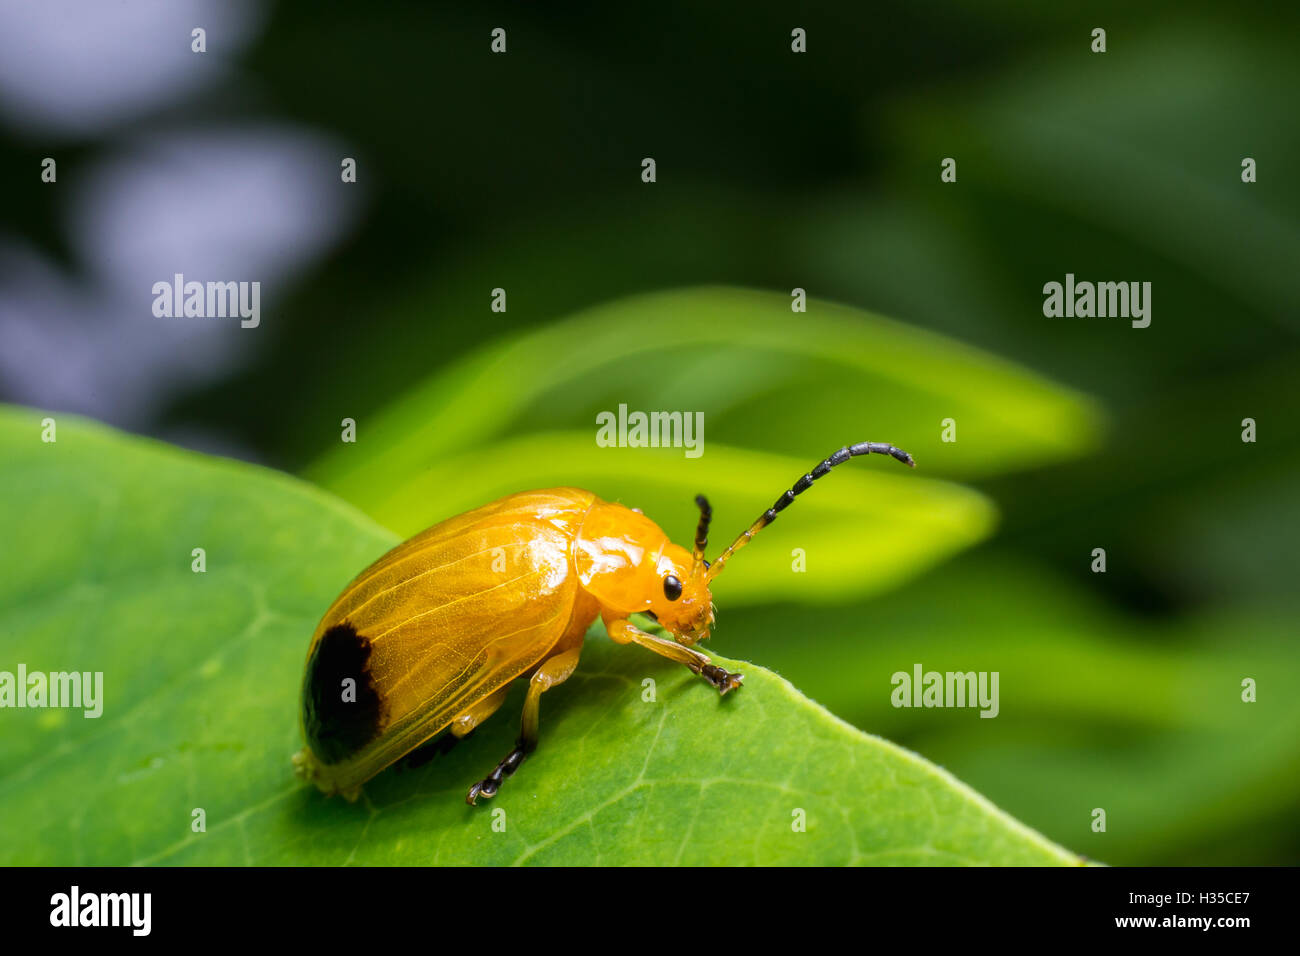 Natur-Bild zeigt Details der Insekten: Nahaufnahme / Makro von einem Kürbis Käfer thront auf einem Blatt. Stockfoto